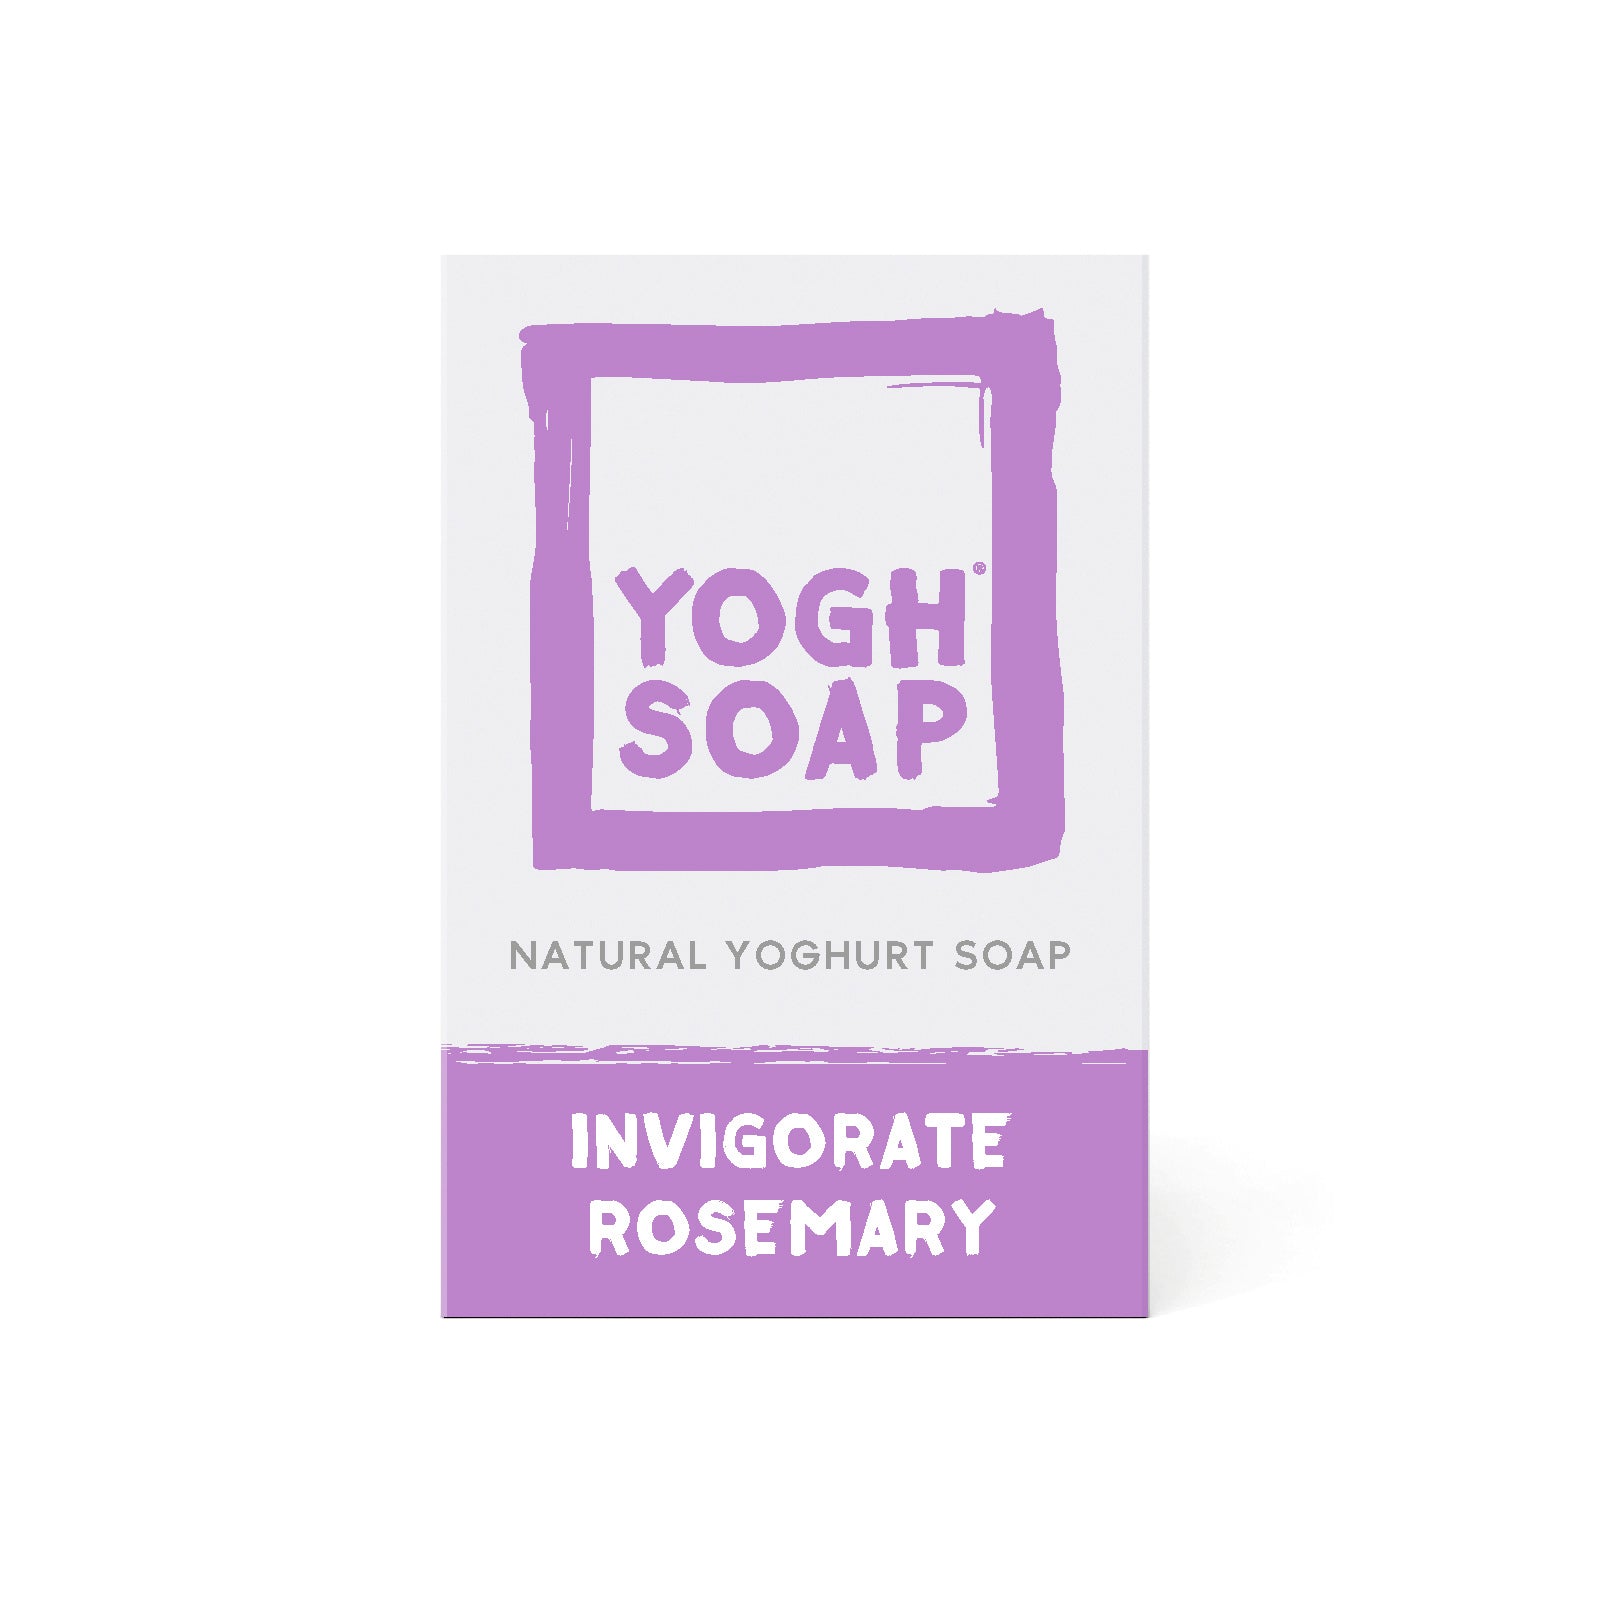 YOGHSOAP® Invigorate Rosemary, 100g.